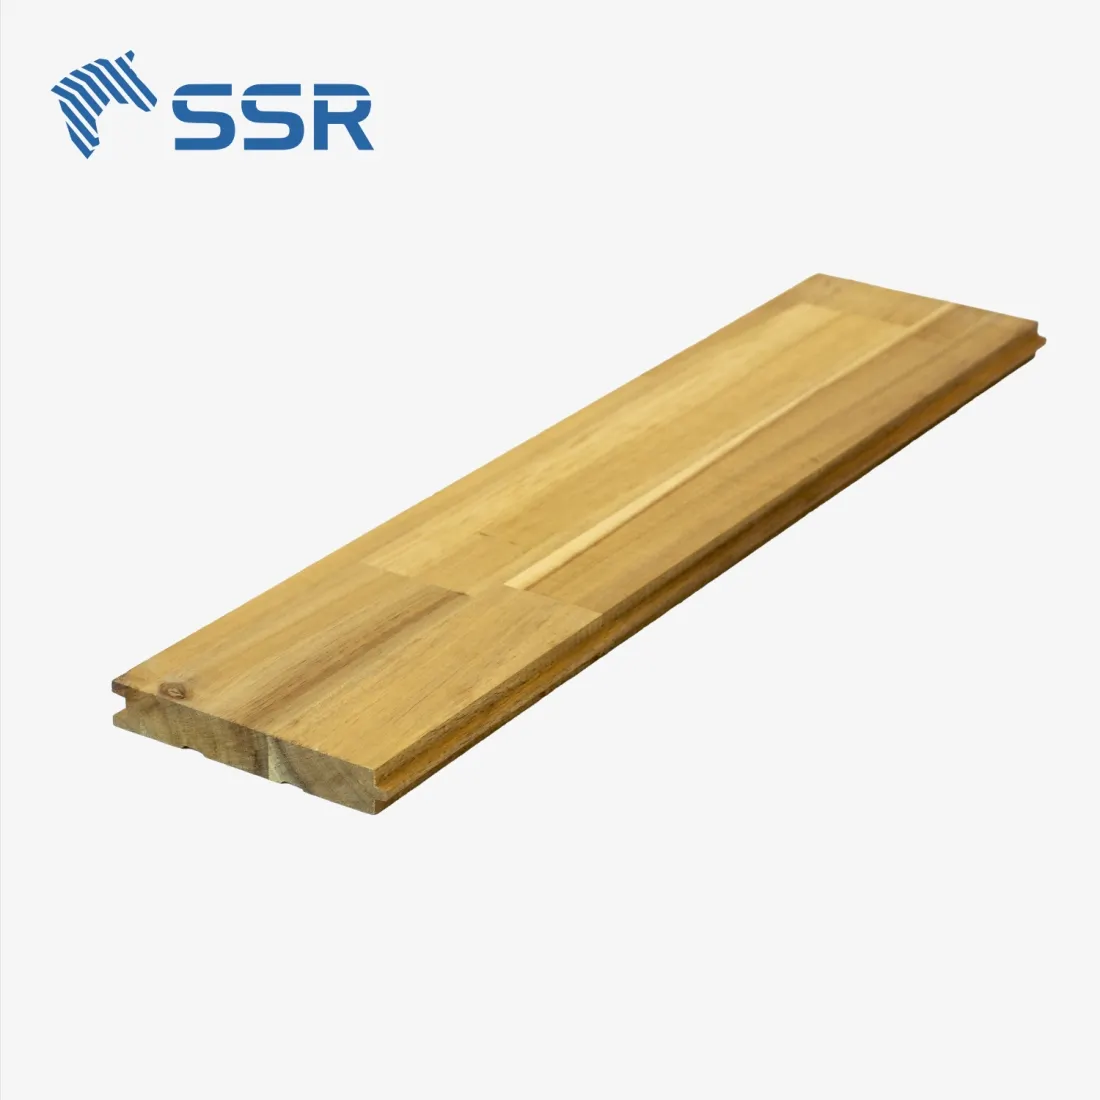 SSR VINA - Acacia/Rubberwood/Senna Siamea деревянный пол-деревянный пол для домашнего декора мебель для дома